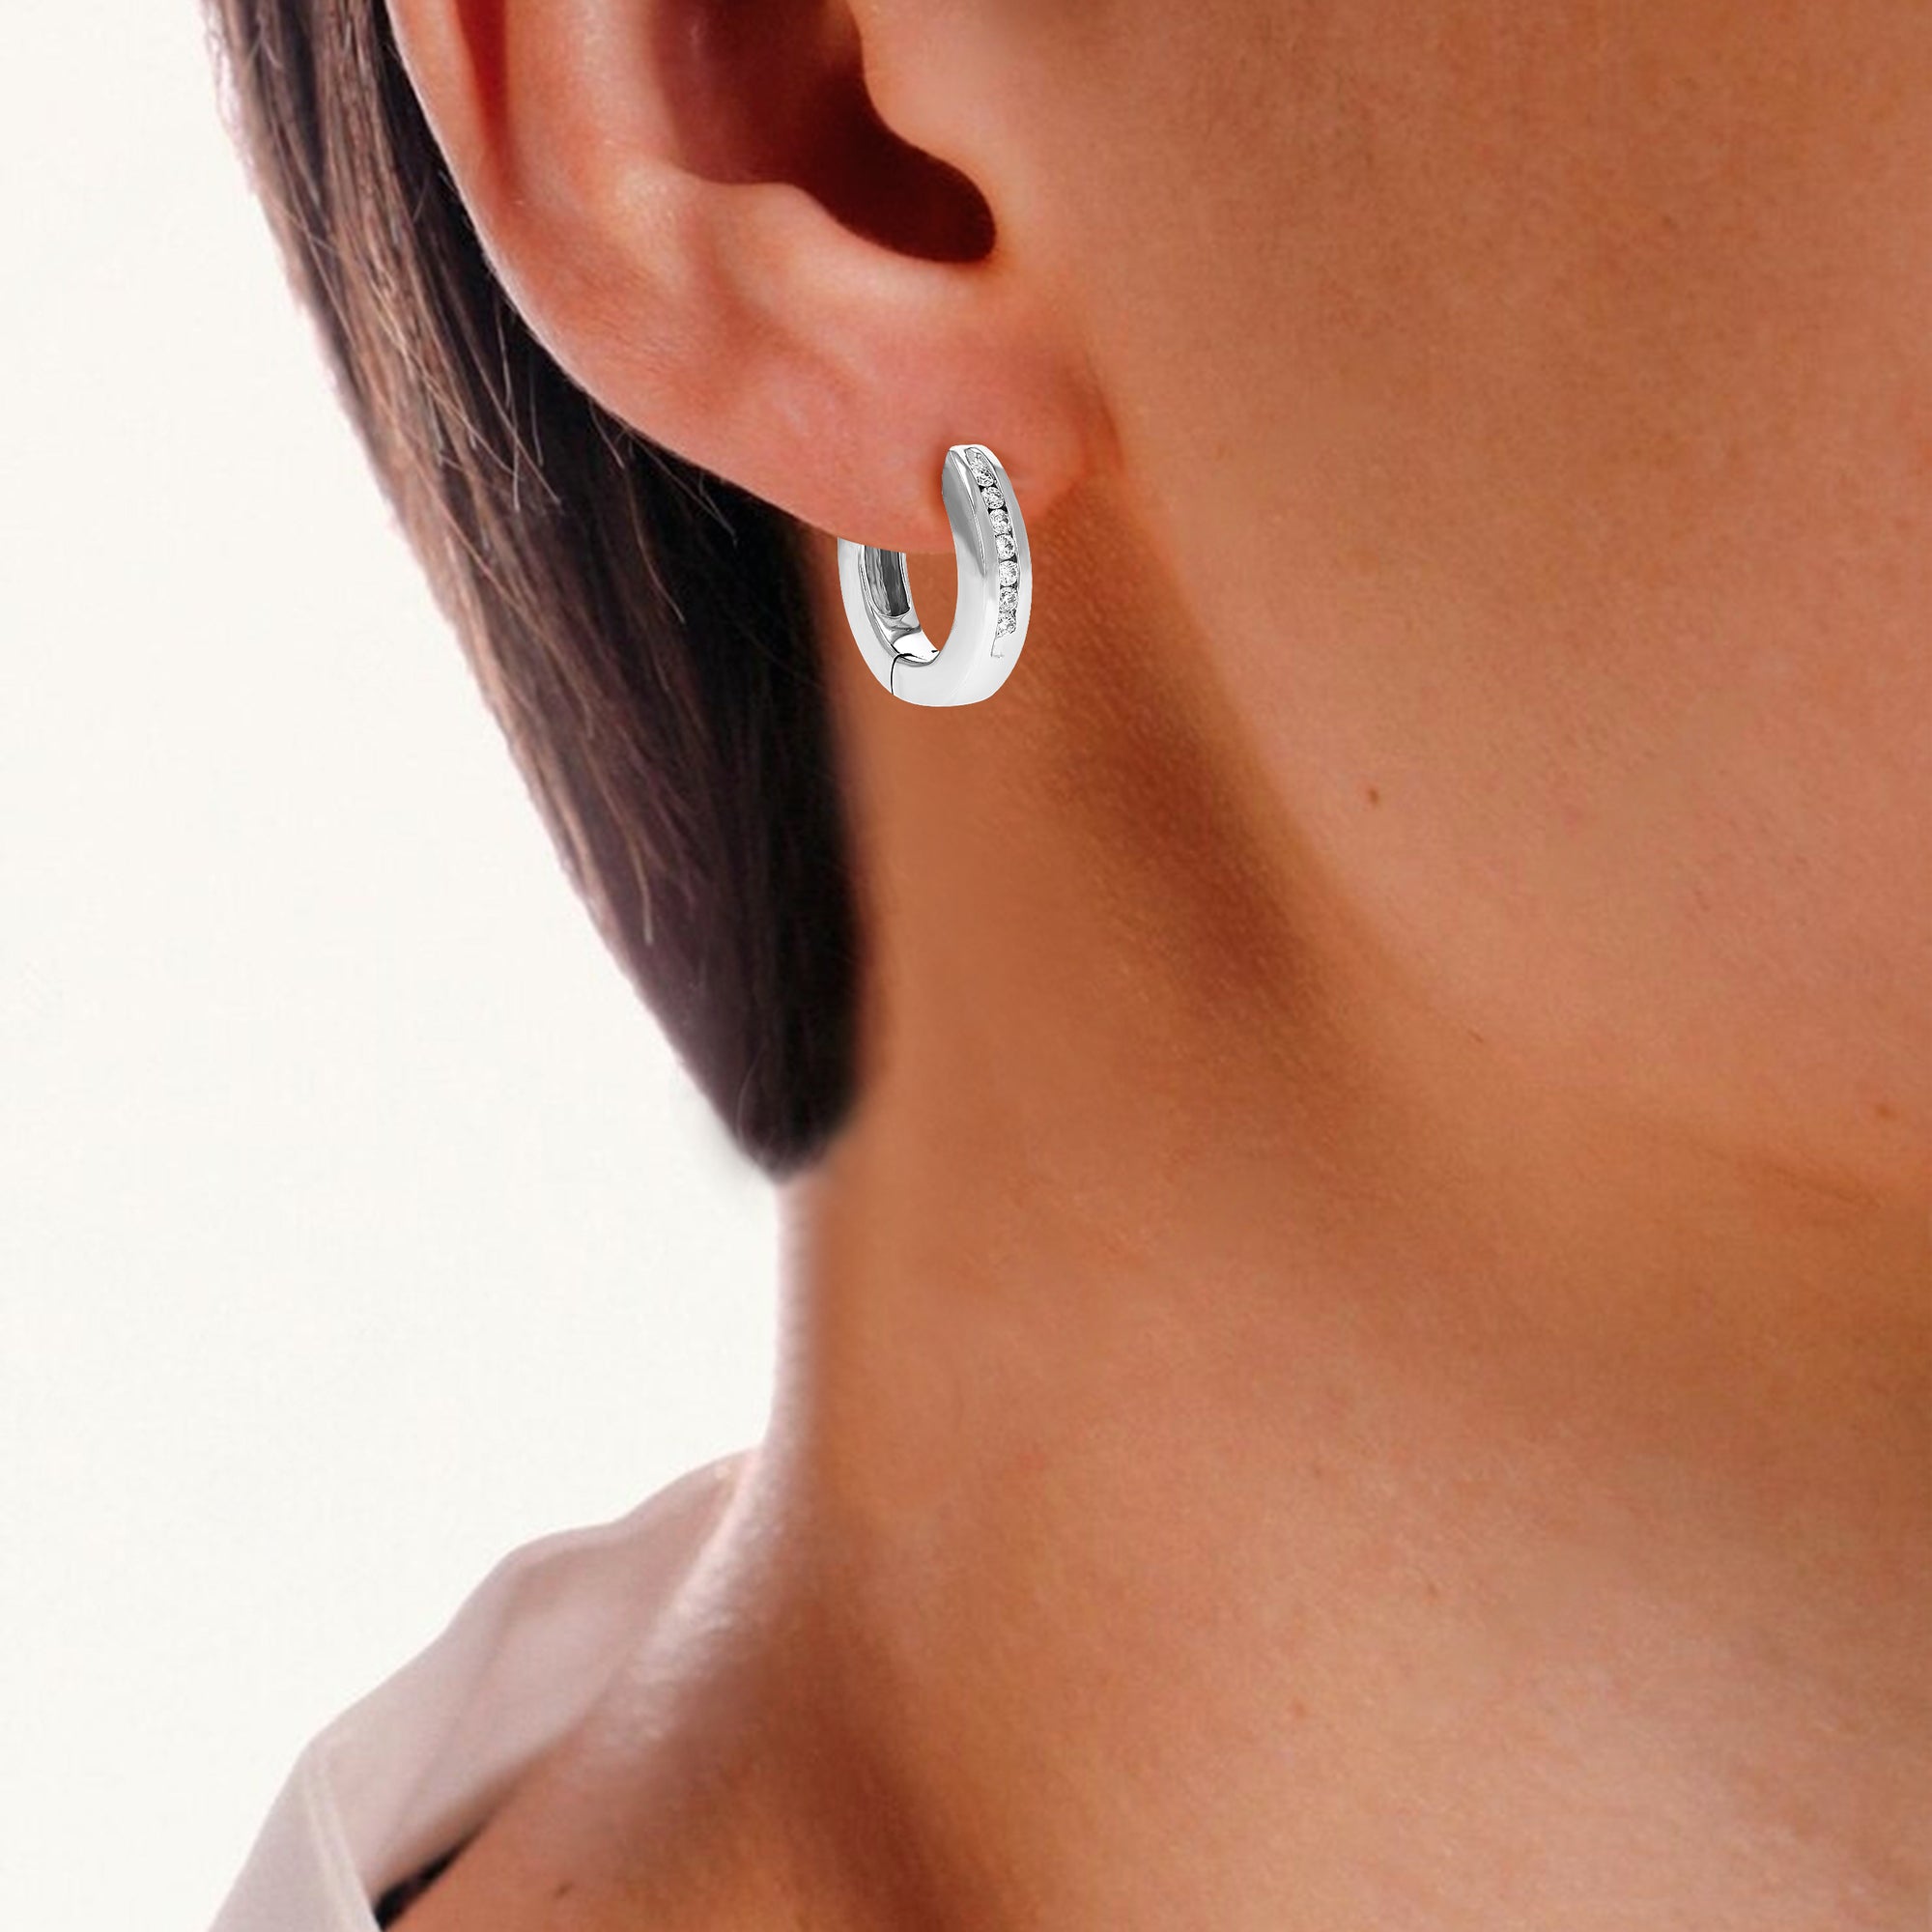 1/10 cttw Diamond Hoop Earrings for Women, Round Lab Grown Diamond Earrings in .925 Sterling Silver, Channel Setting, 1/2 Inch